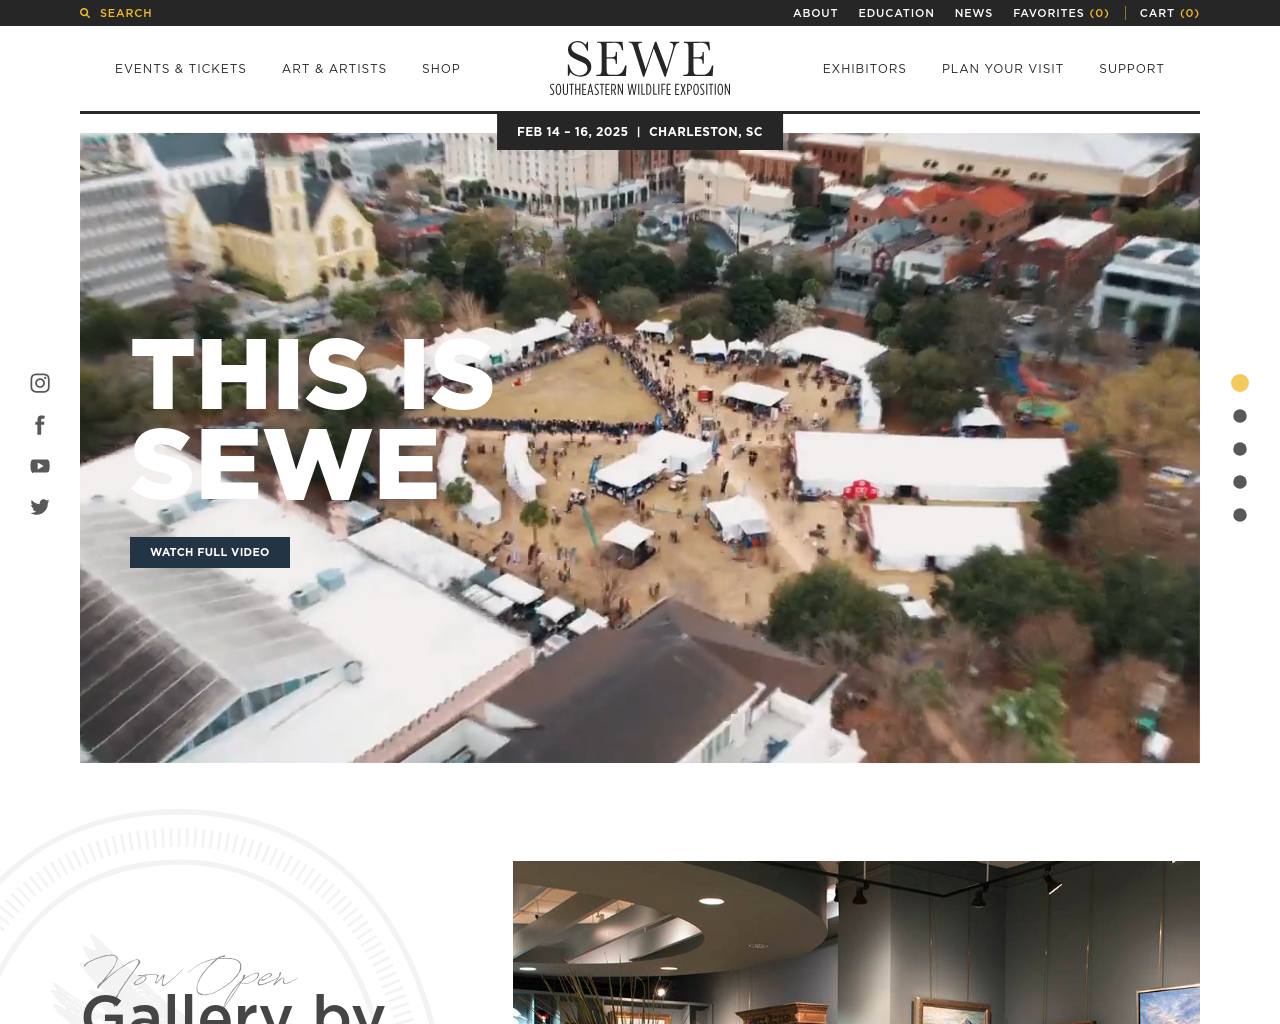 sewe.com